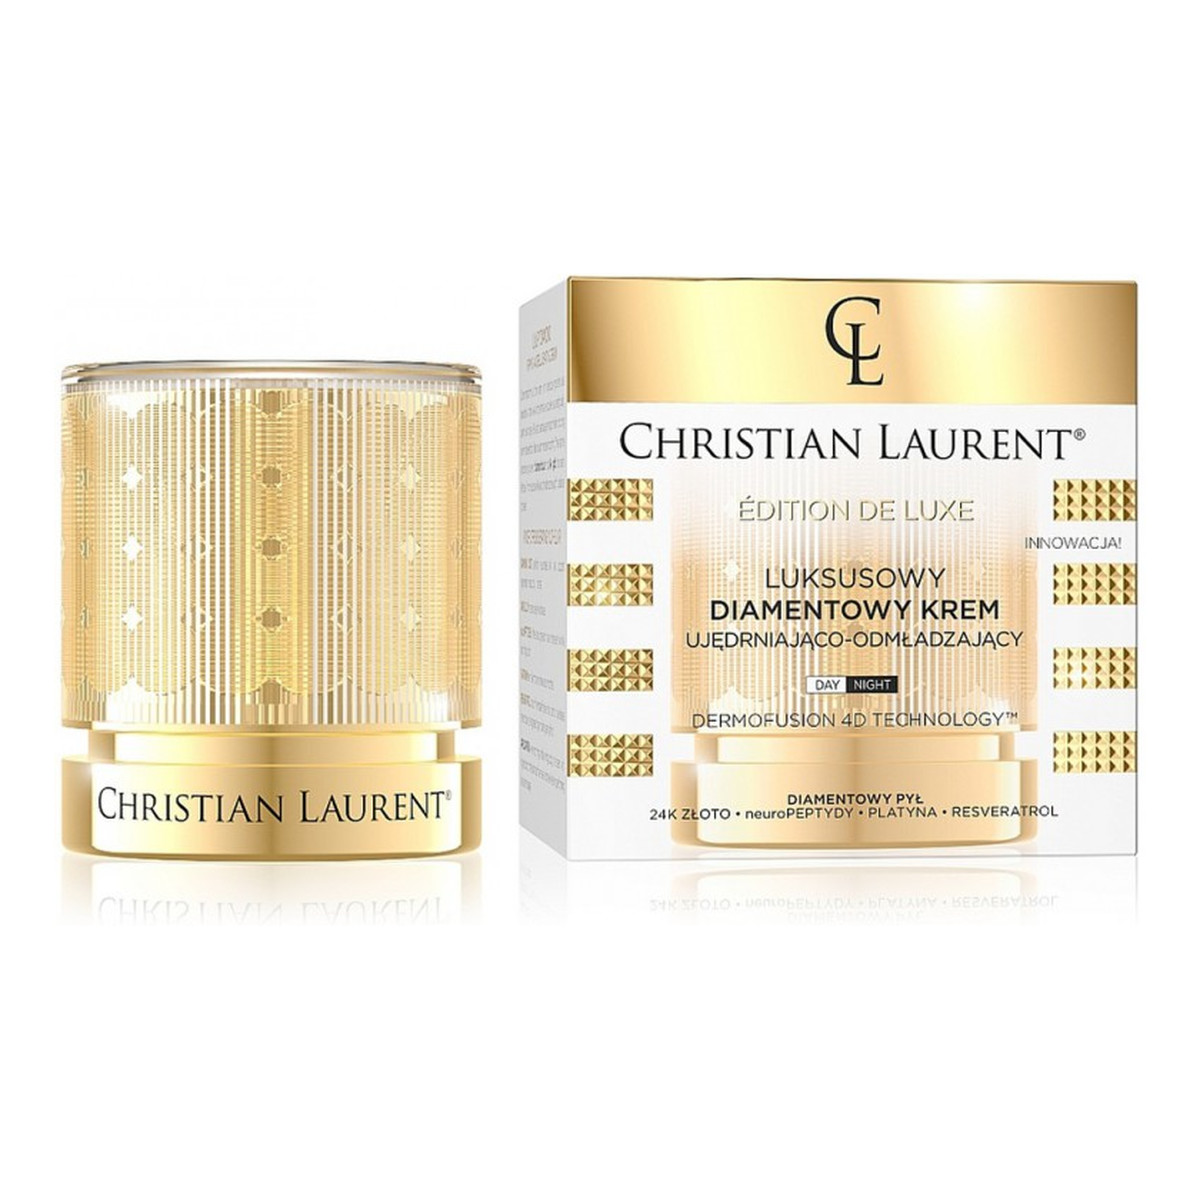 Christian Laurent Luksusowy Diamentowy Krem ujędrniająco-odmładzający na dzień i noc 50ml